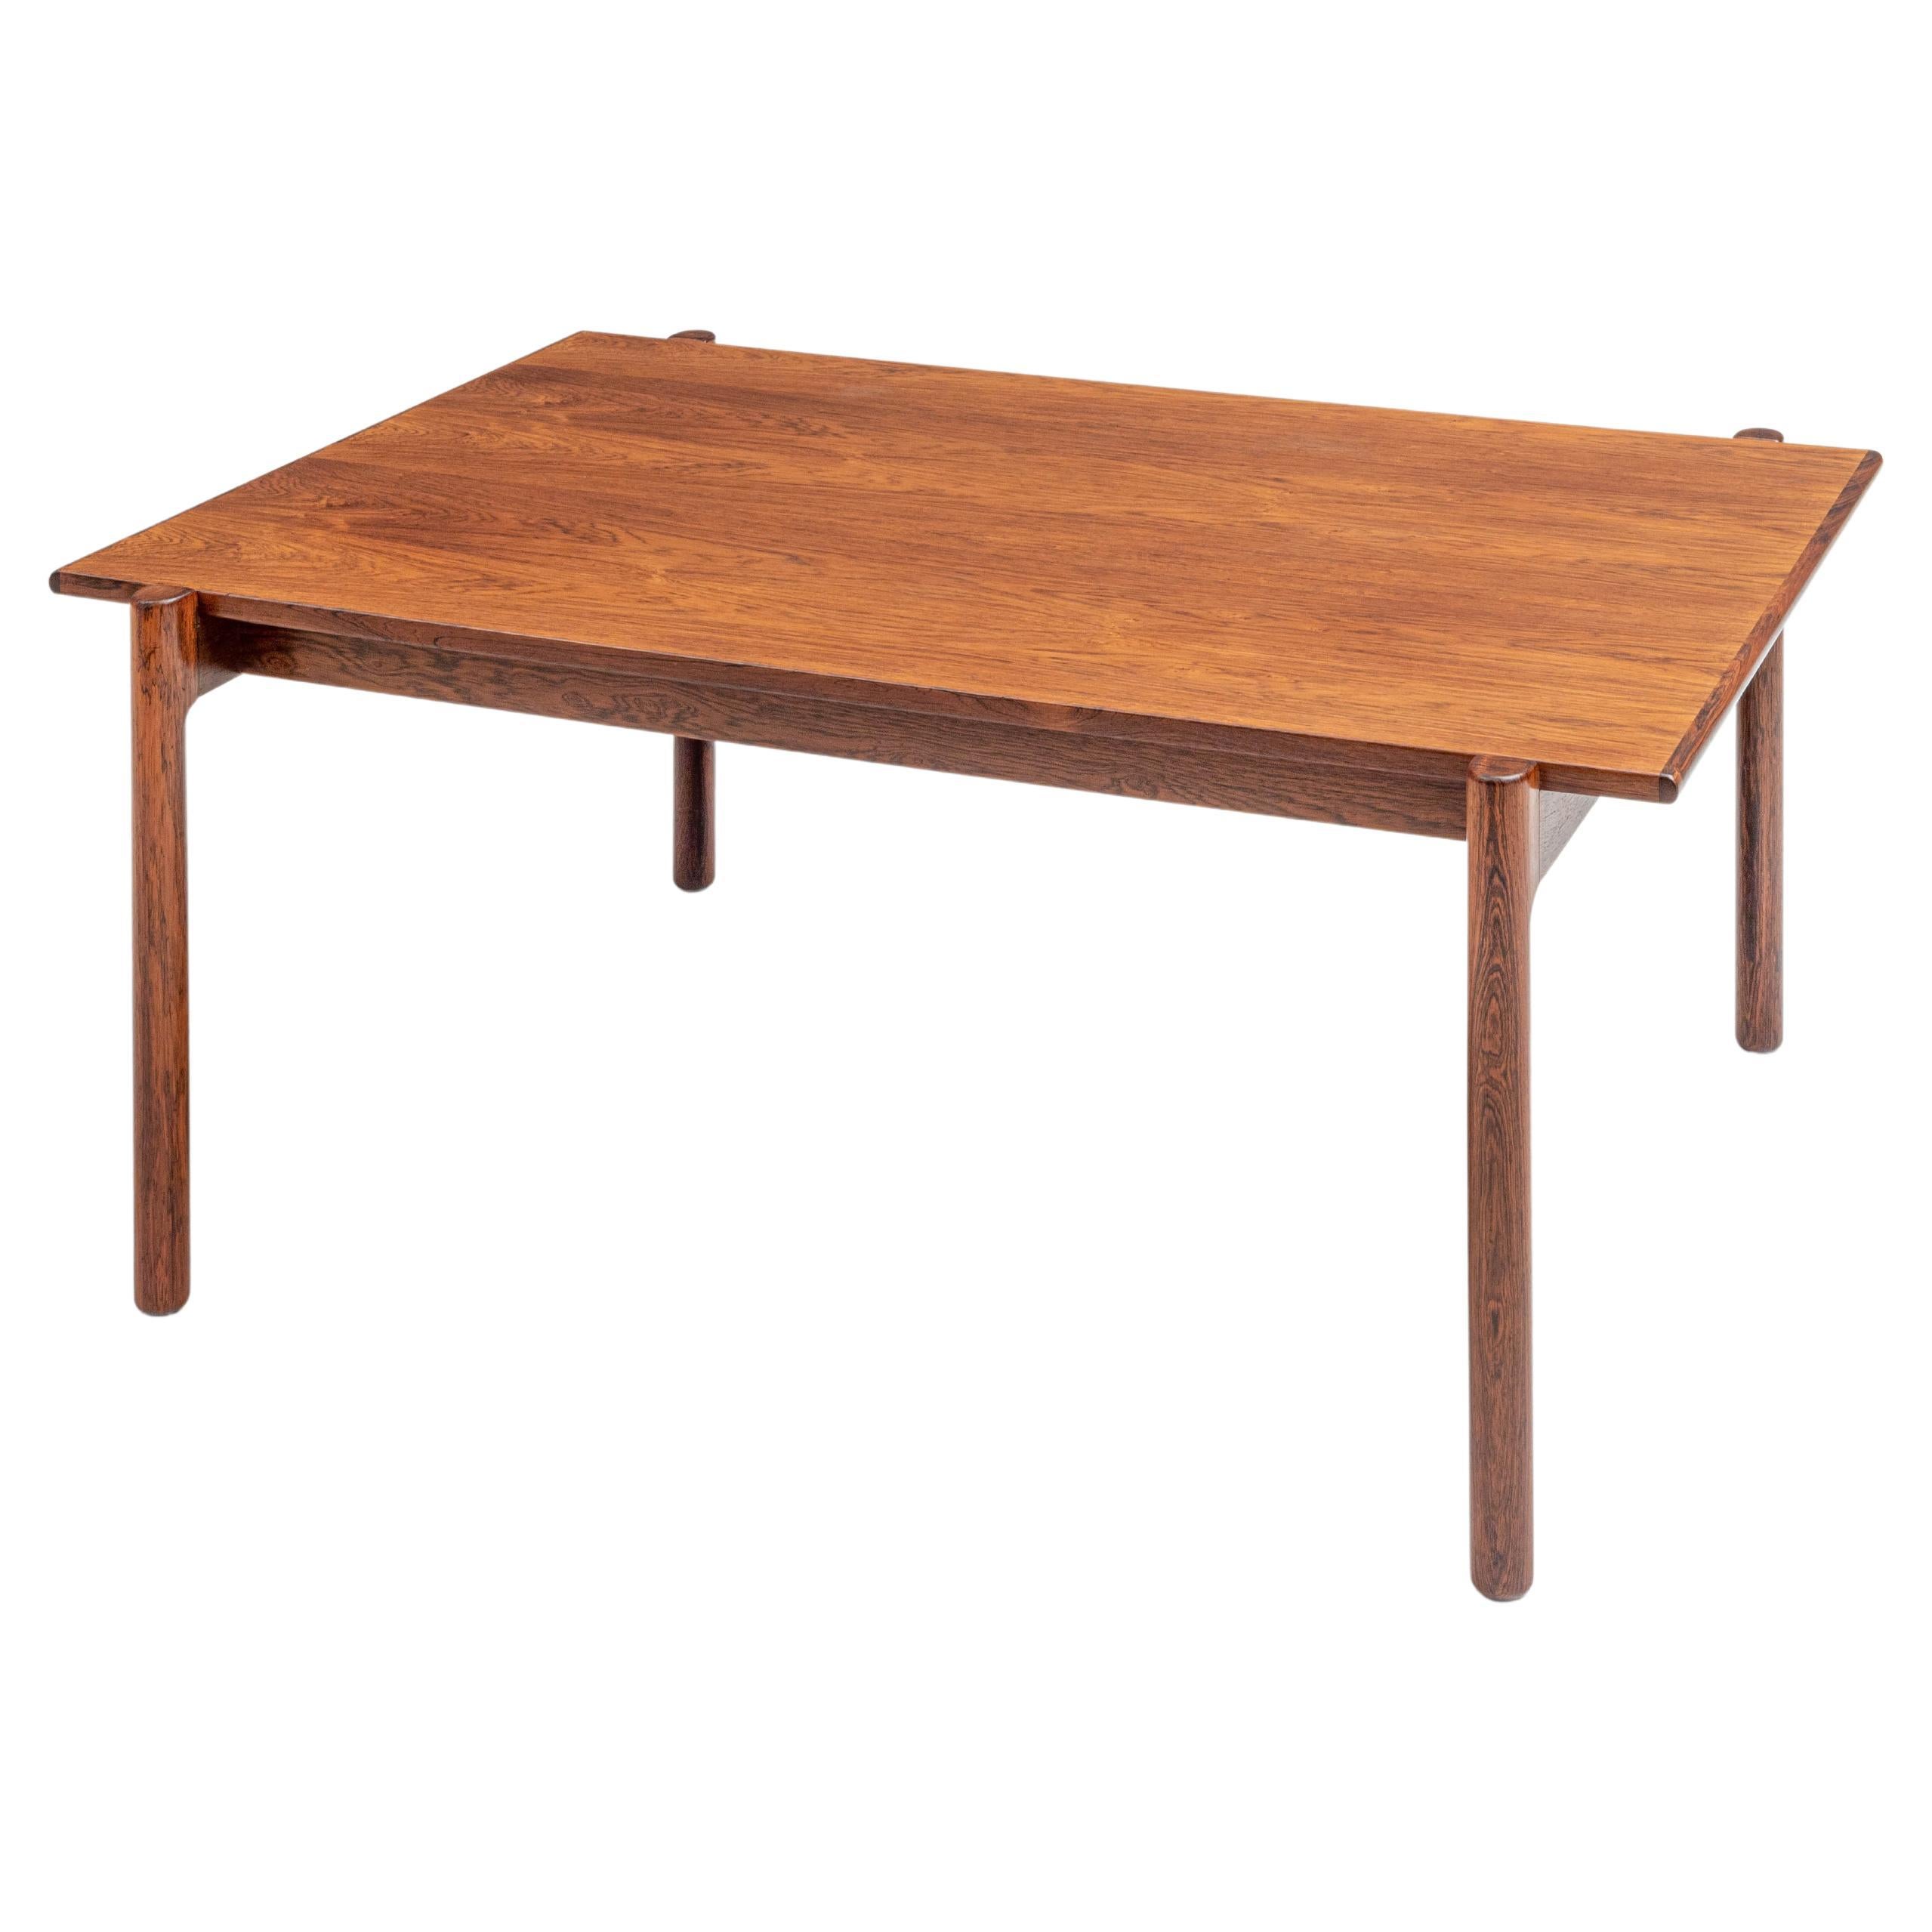 Cette table basse de Kurt Østervig en bois de rose est un parfait exemple du design danois du milieu du siècle dernier. Elle porte le numéro 547 et est assez rare car peu de tables de ce modèle ont été fabriquées. Le plateau aux bords arrondis est